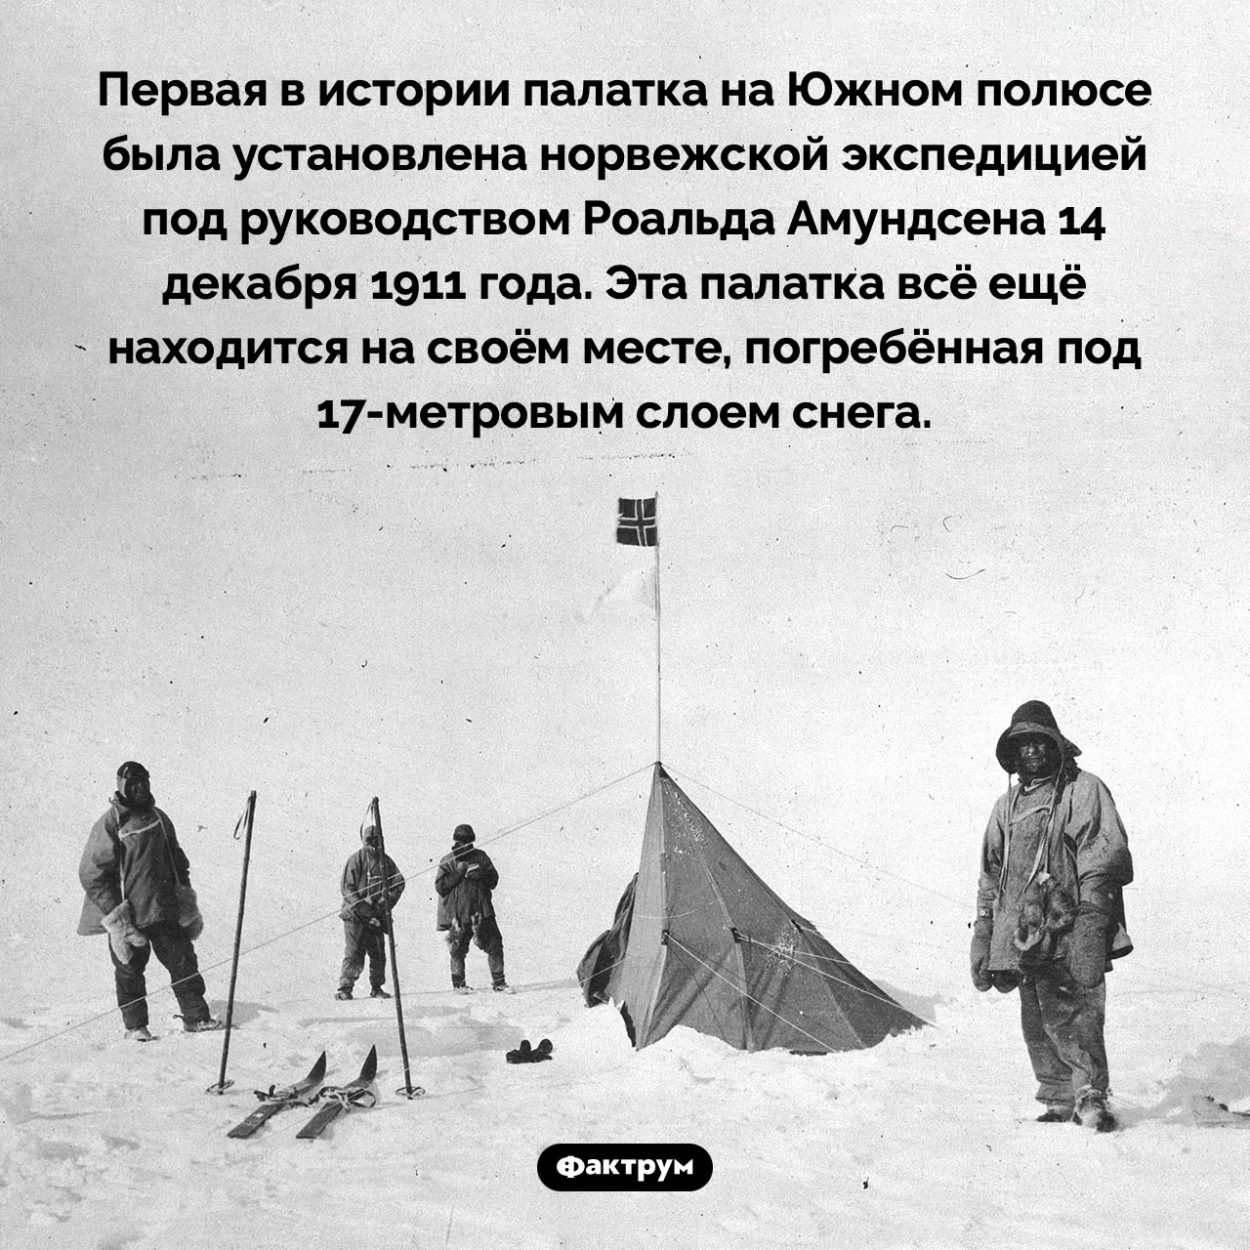 Первая в истории палатка на Южном полюсе стоит там уже более ста лет. Первая в истории палатка на Южном полюсе была установлена норвежской экспедицией под руководством Роальда Амундсена 14 декабря 1911 года. Эта палатка всё ещё находится на своём месте, погребённая под 17-метровым слоем снега.